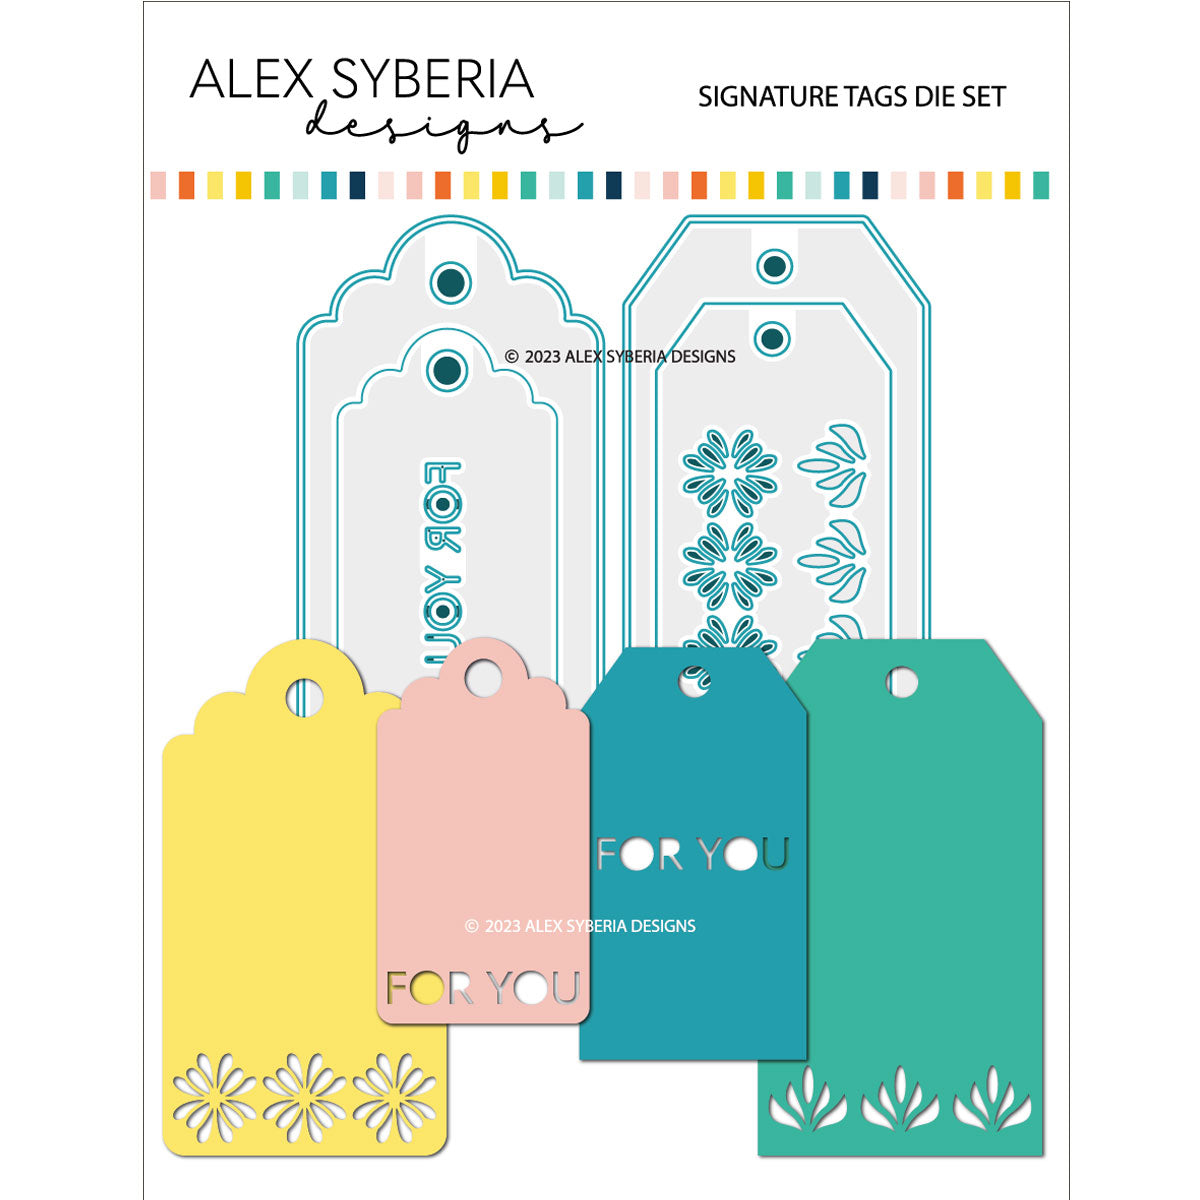 Alex Syberia Designs - Dies set - Signature Tags